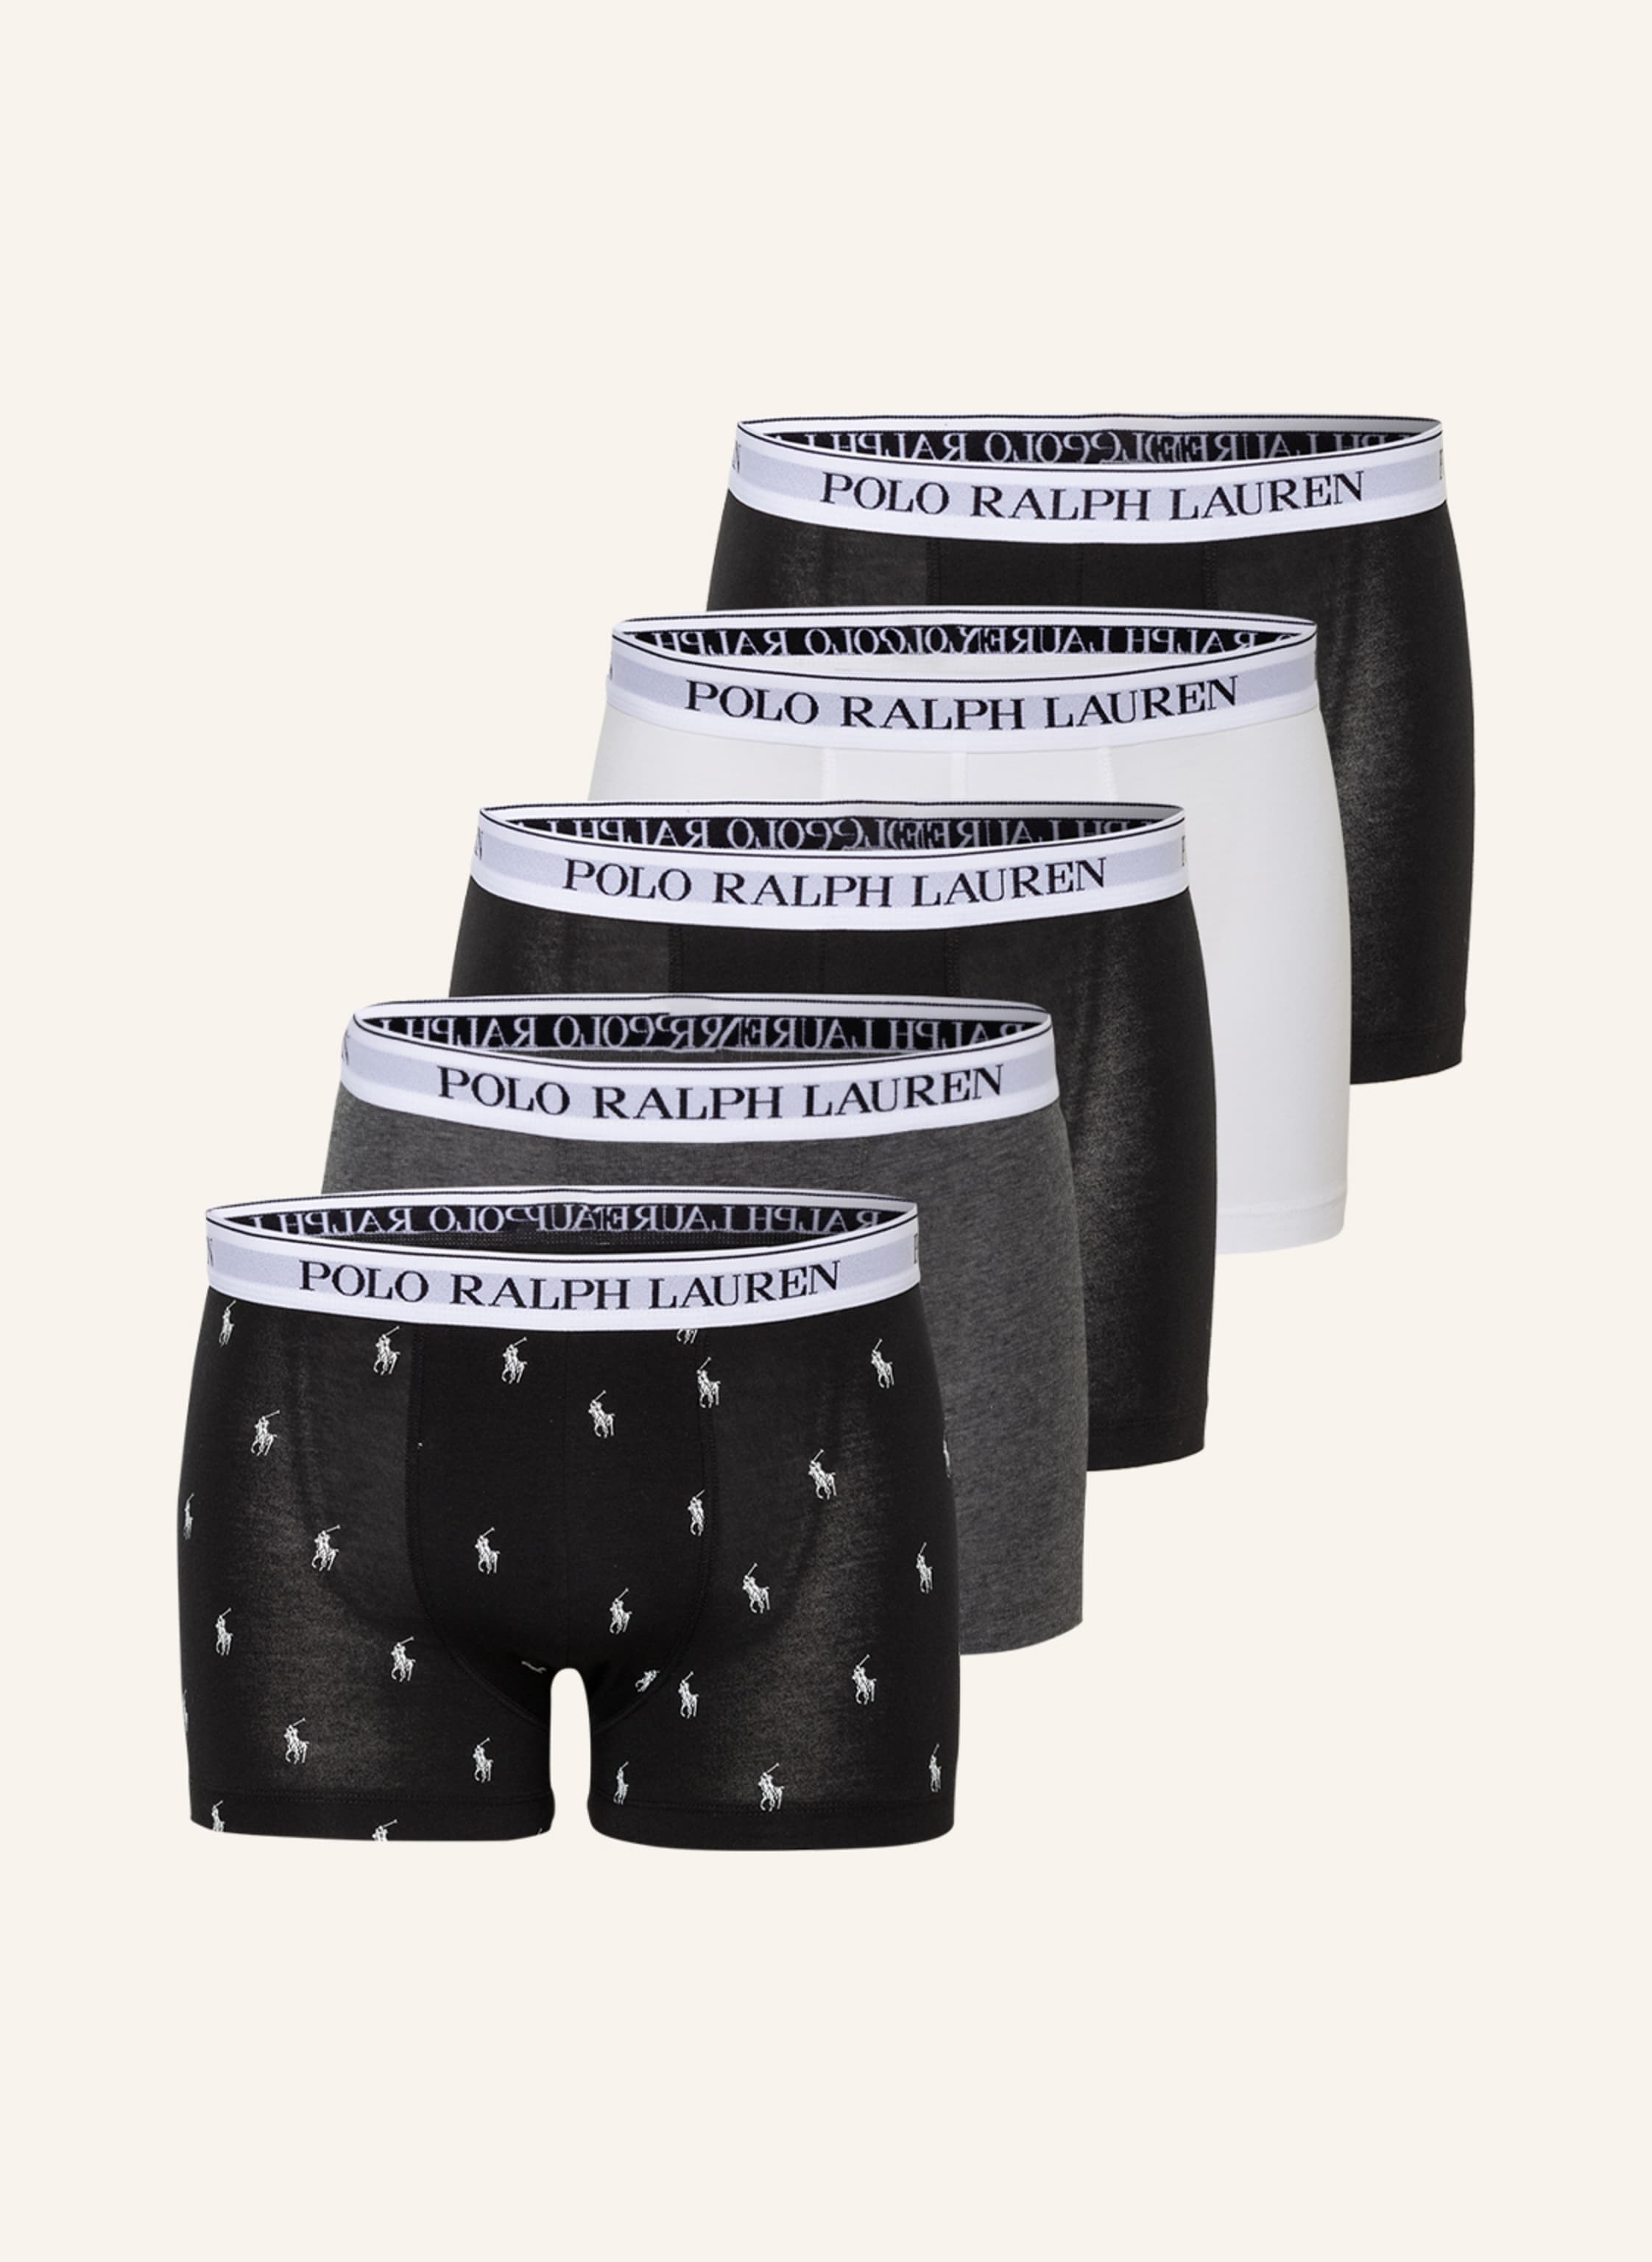 Polo Ralph Lauren trunks with logo pattern waistband